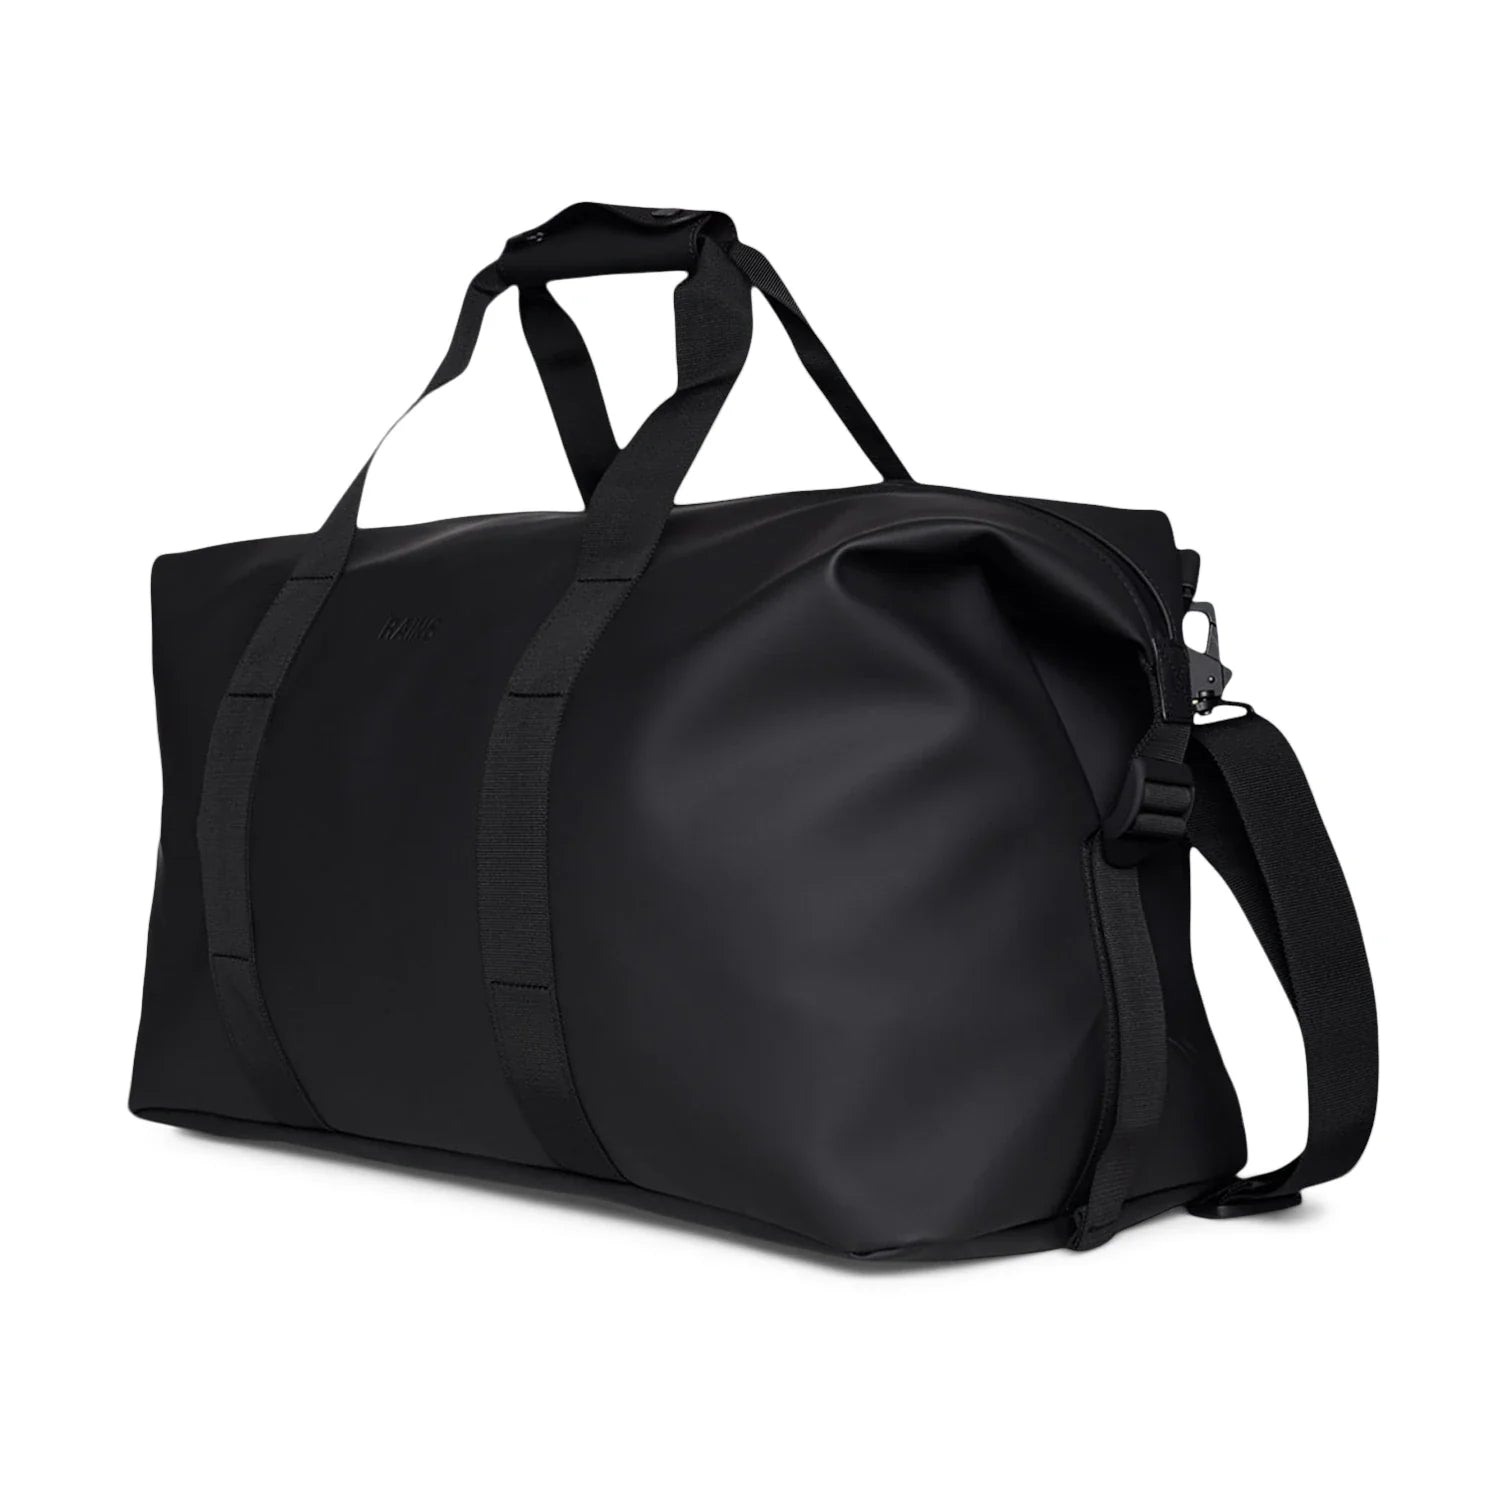 Hilo Weekend Bag | Black | Waterproof | by Rains - Lifestory